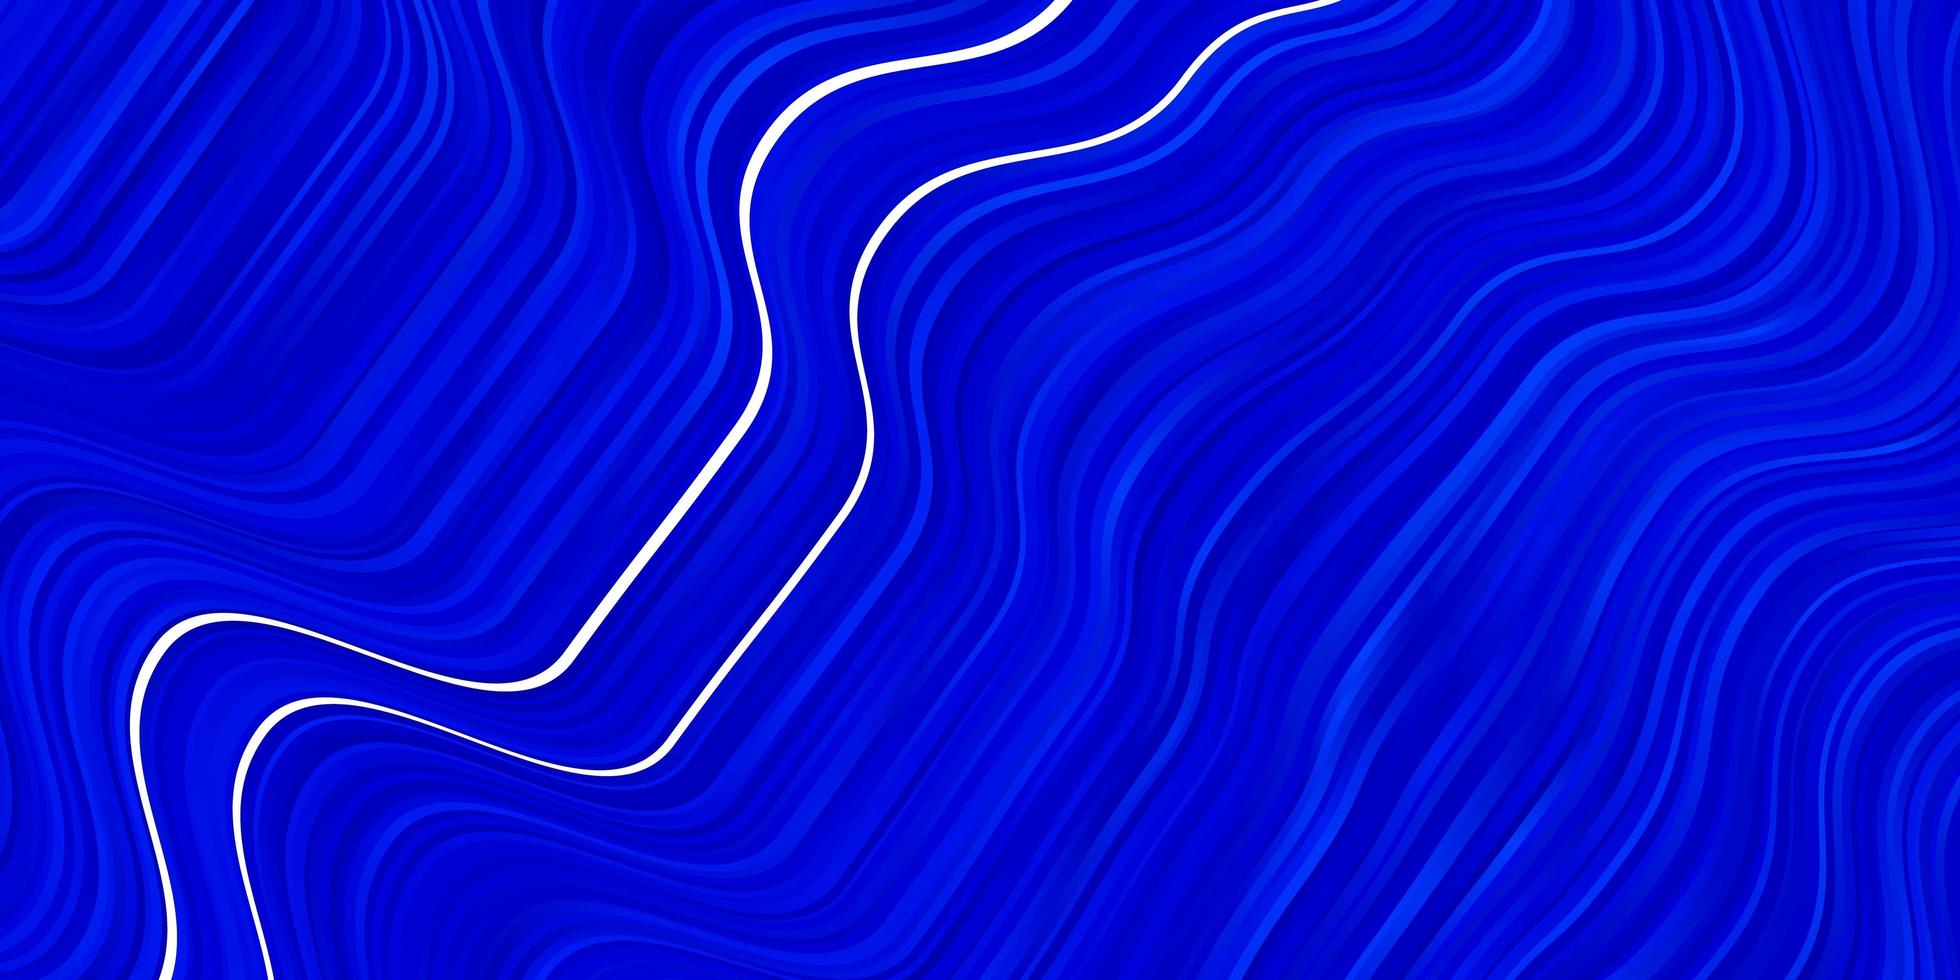 Fondo de vector azul claro con líneas dobladas.